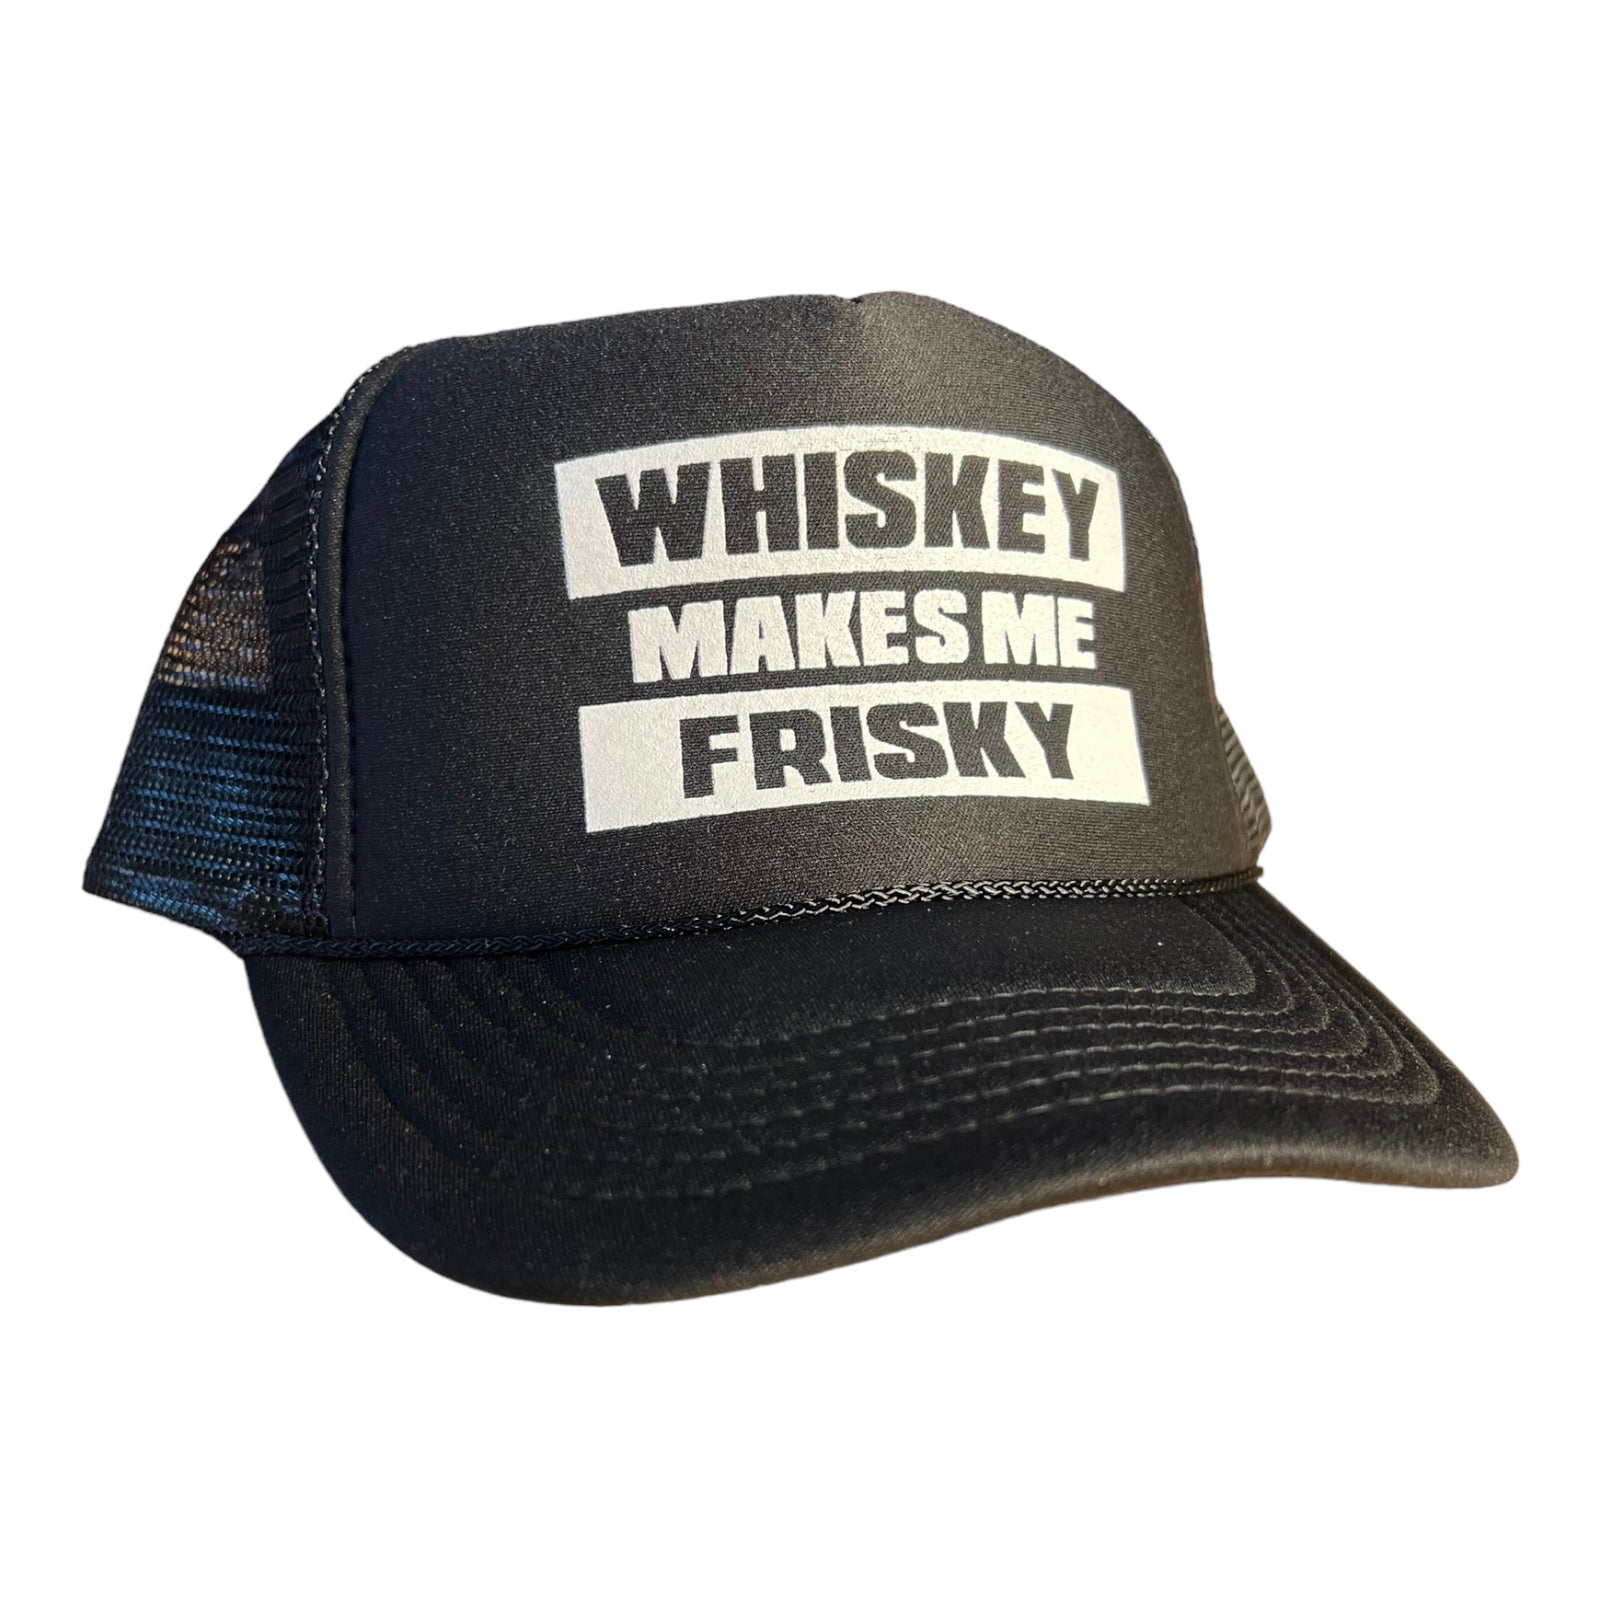 Frisky Trucker Hat Funny Trucker Hat Black – FunnyTruckerHats